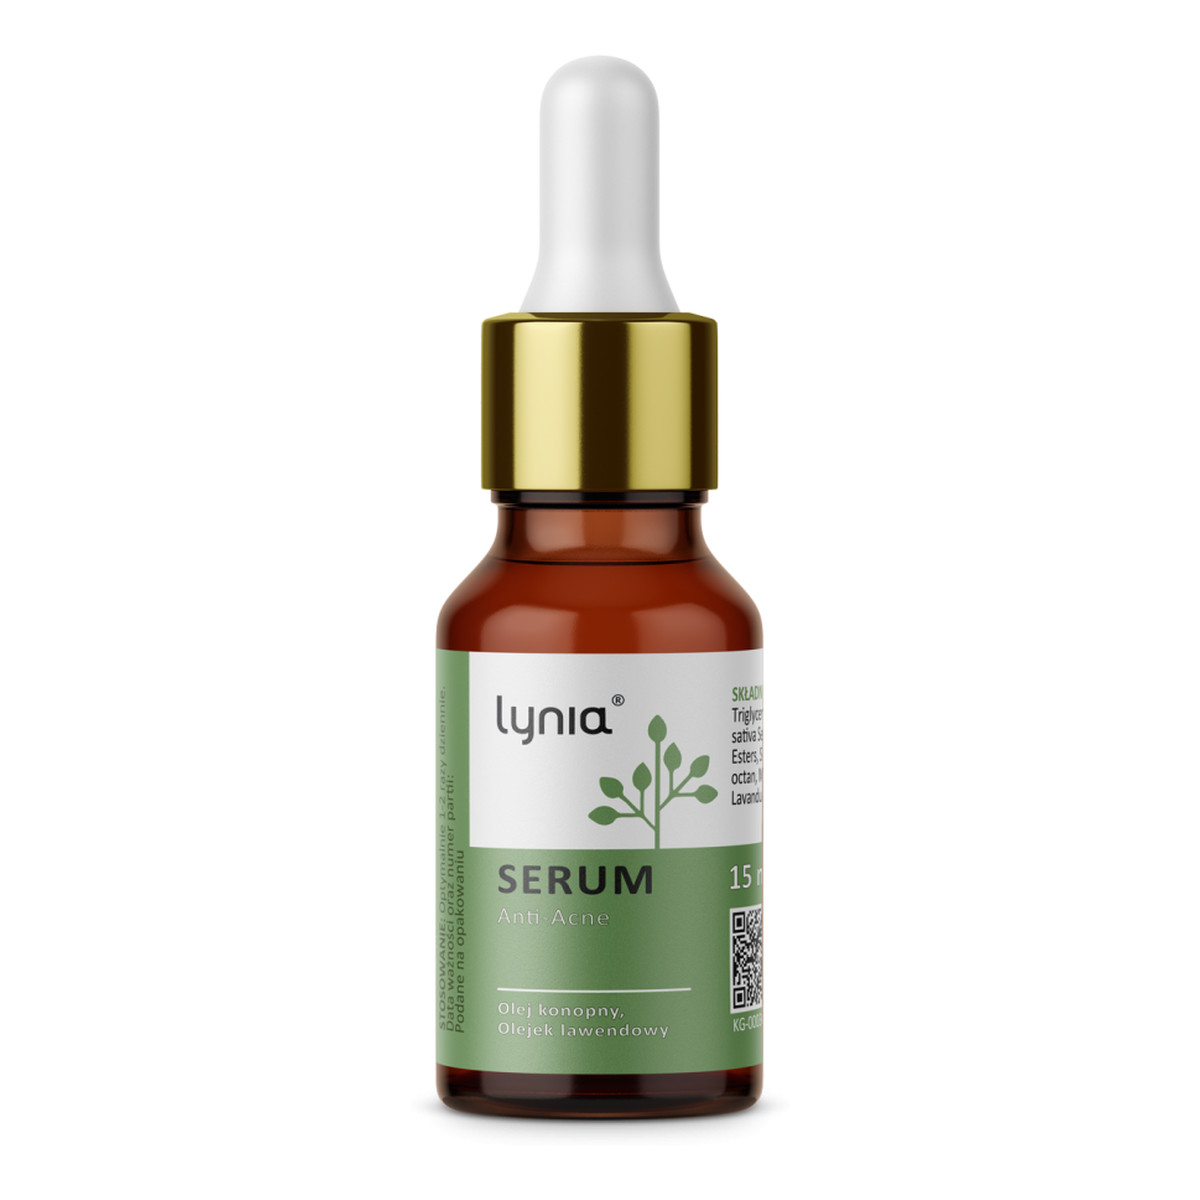 Lynia Serum Anti-Acne z olejem konopnym i olejkiem lawendowym 15ml